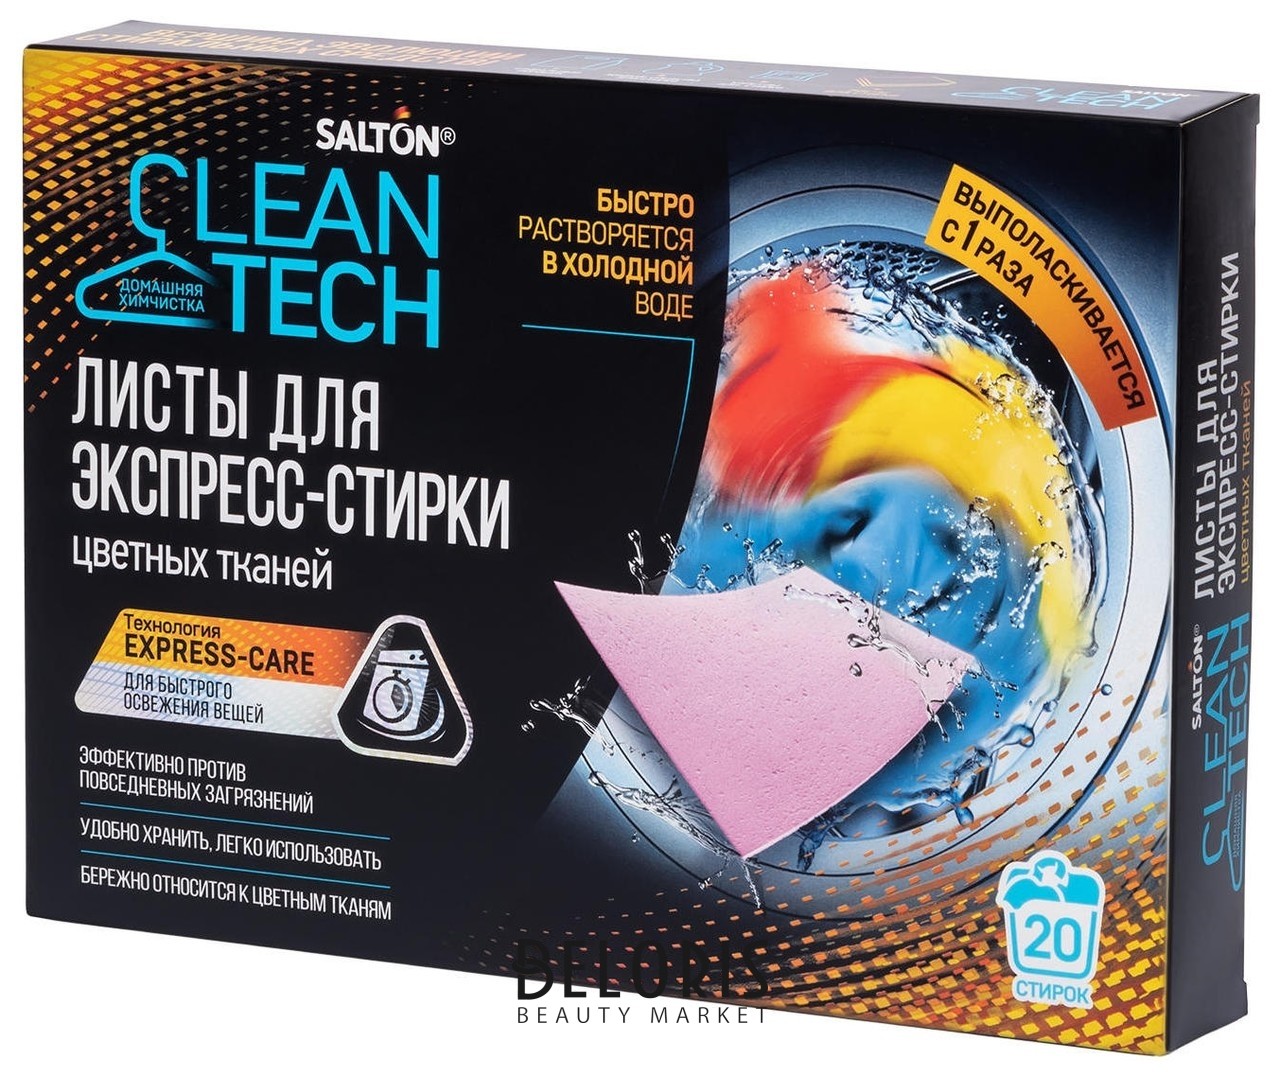 Salton clean tech листы для экспресс-стирки белых тканей отзывы